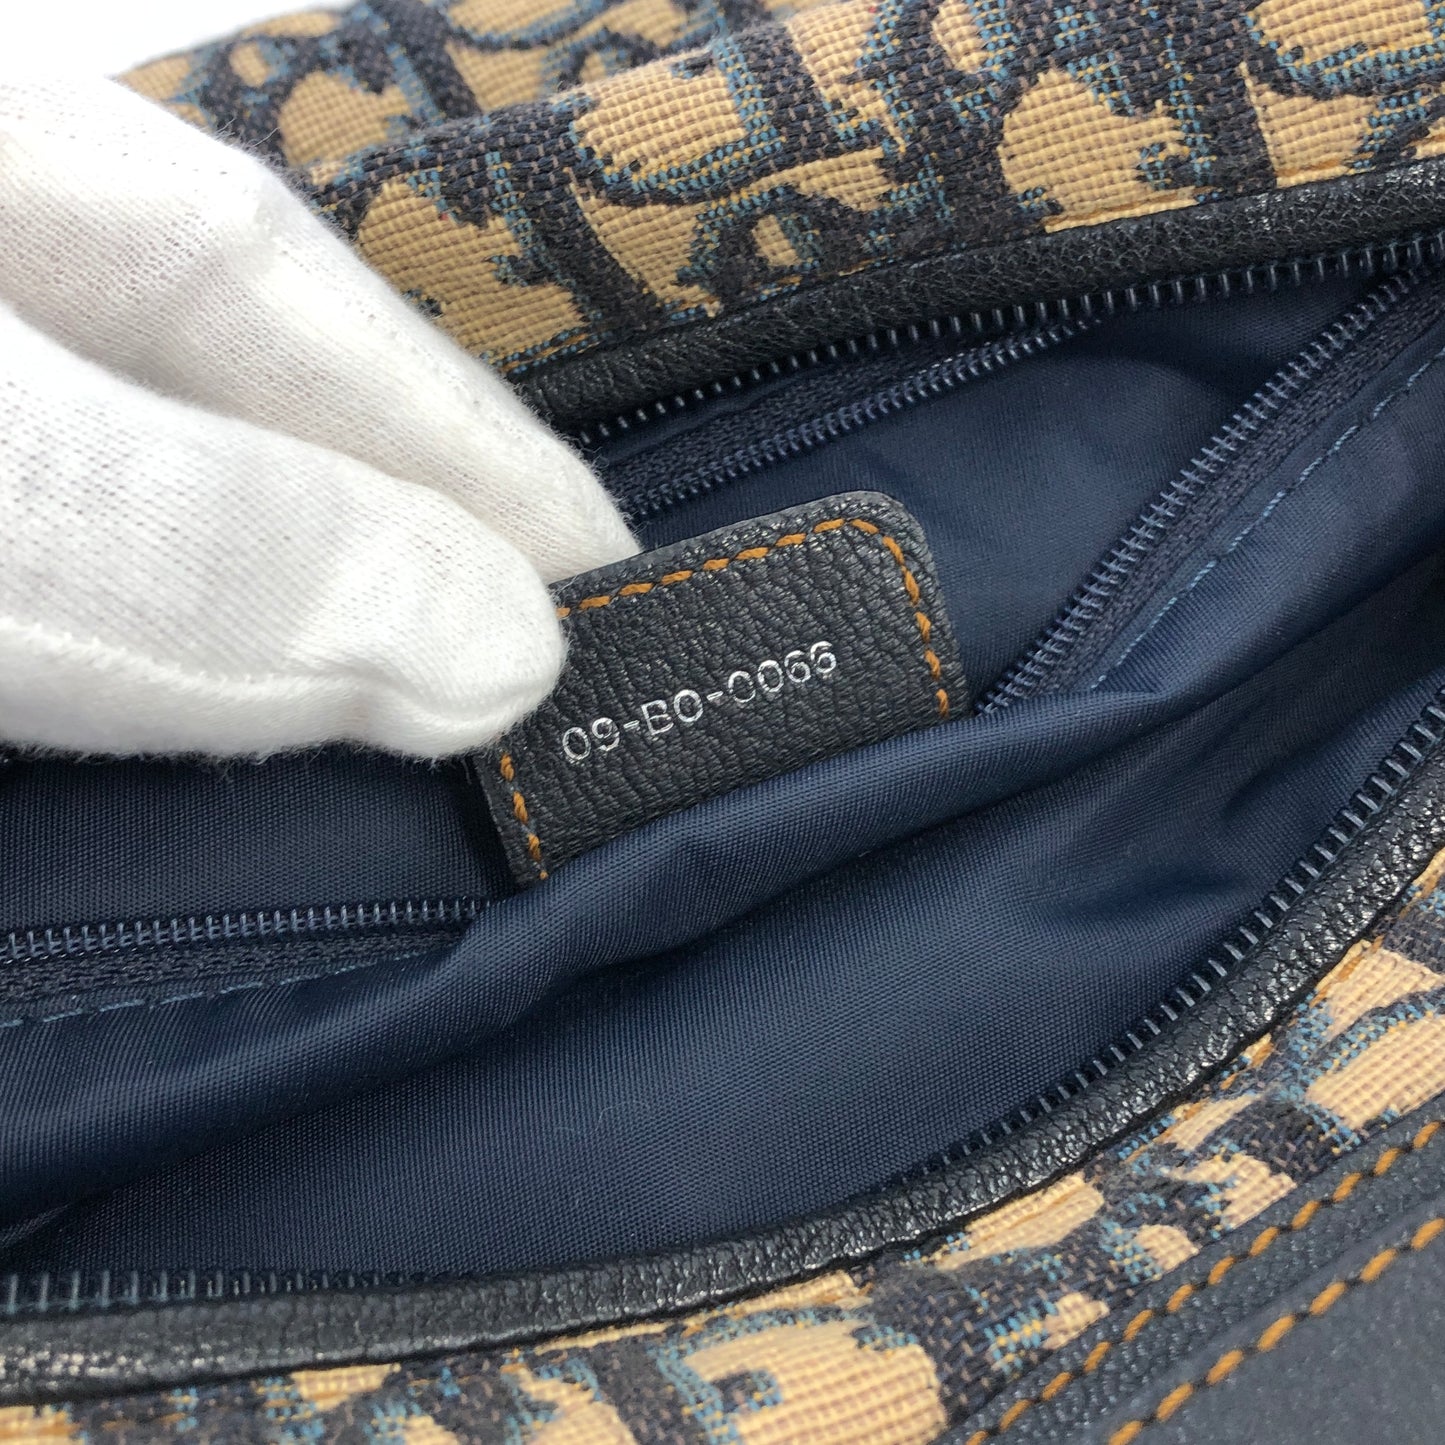 Christian Dior Trotter Jacquard Leather Shoulder bag Hobobag Navy Vintage wte43h